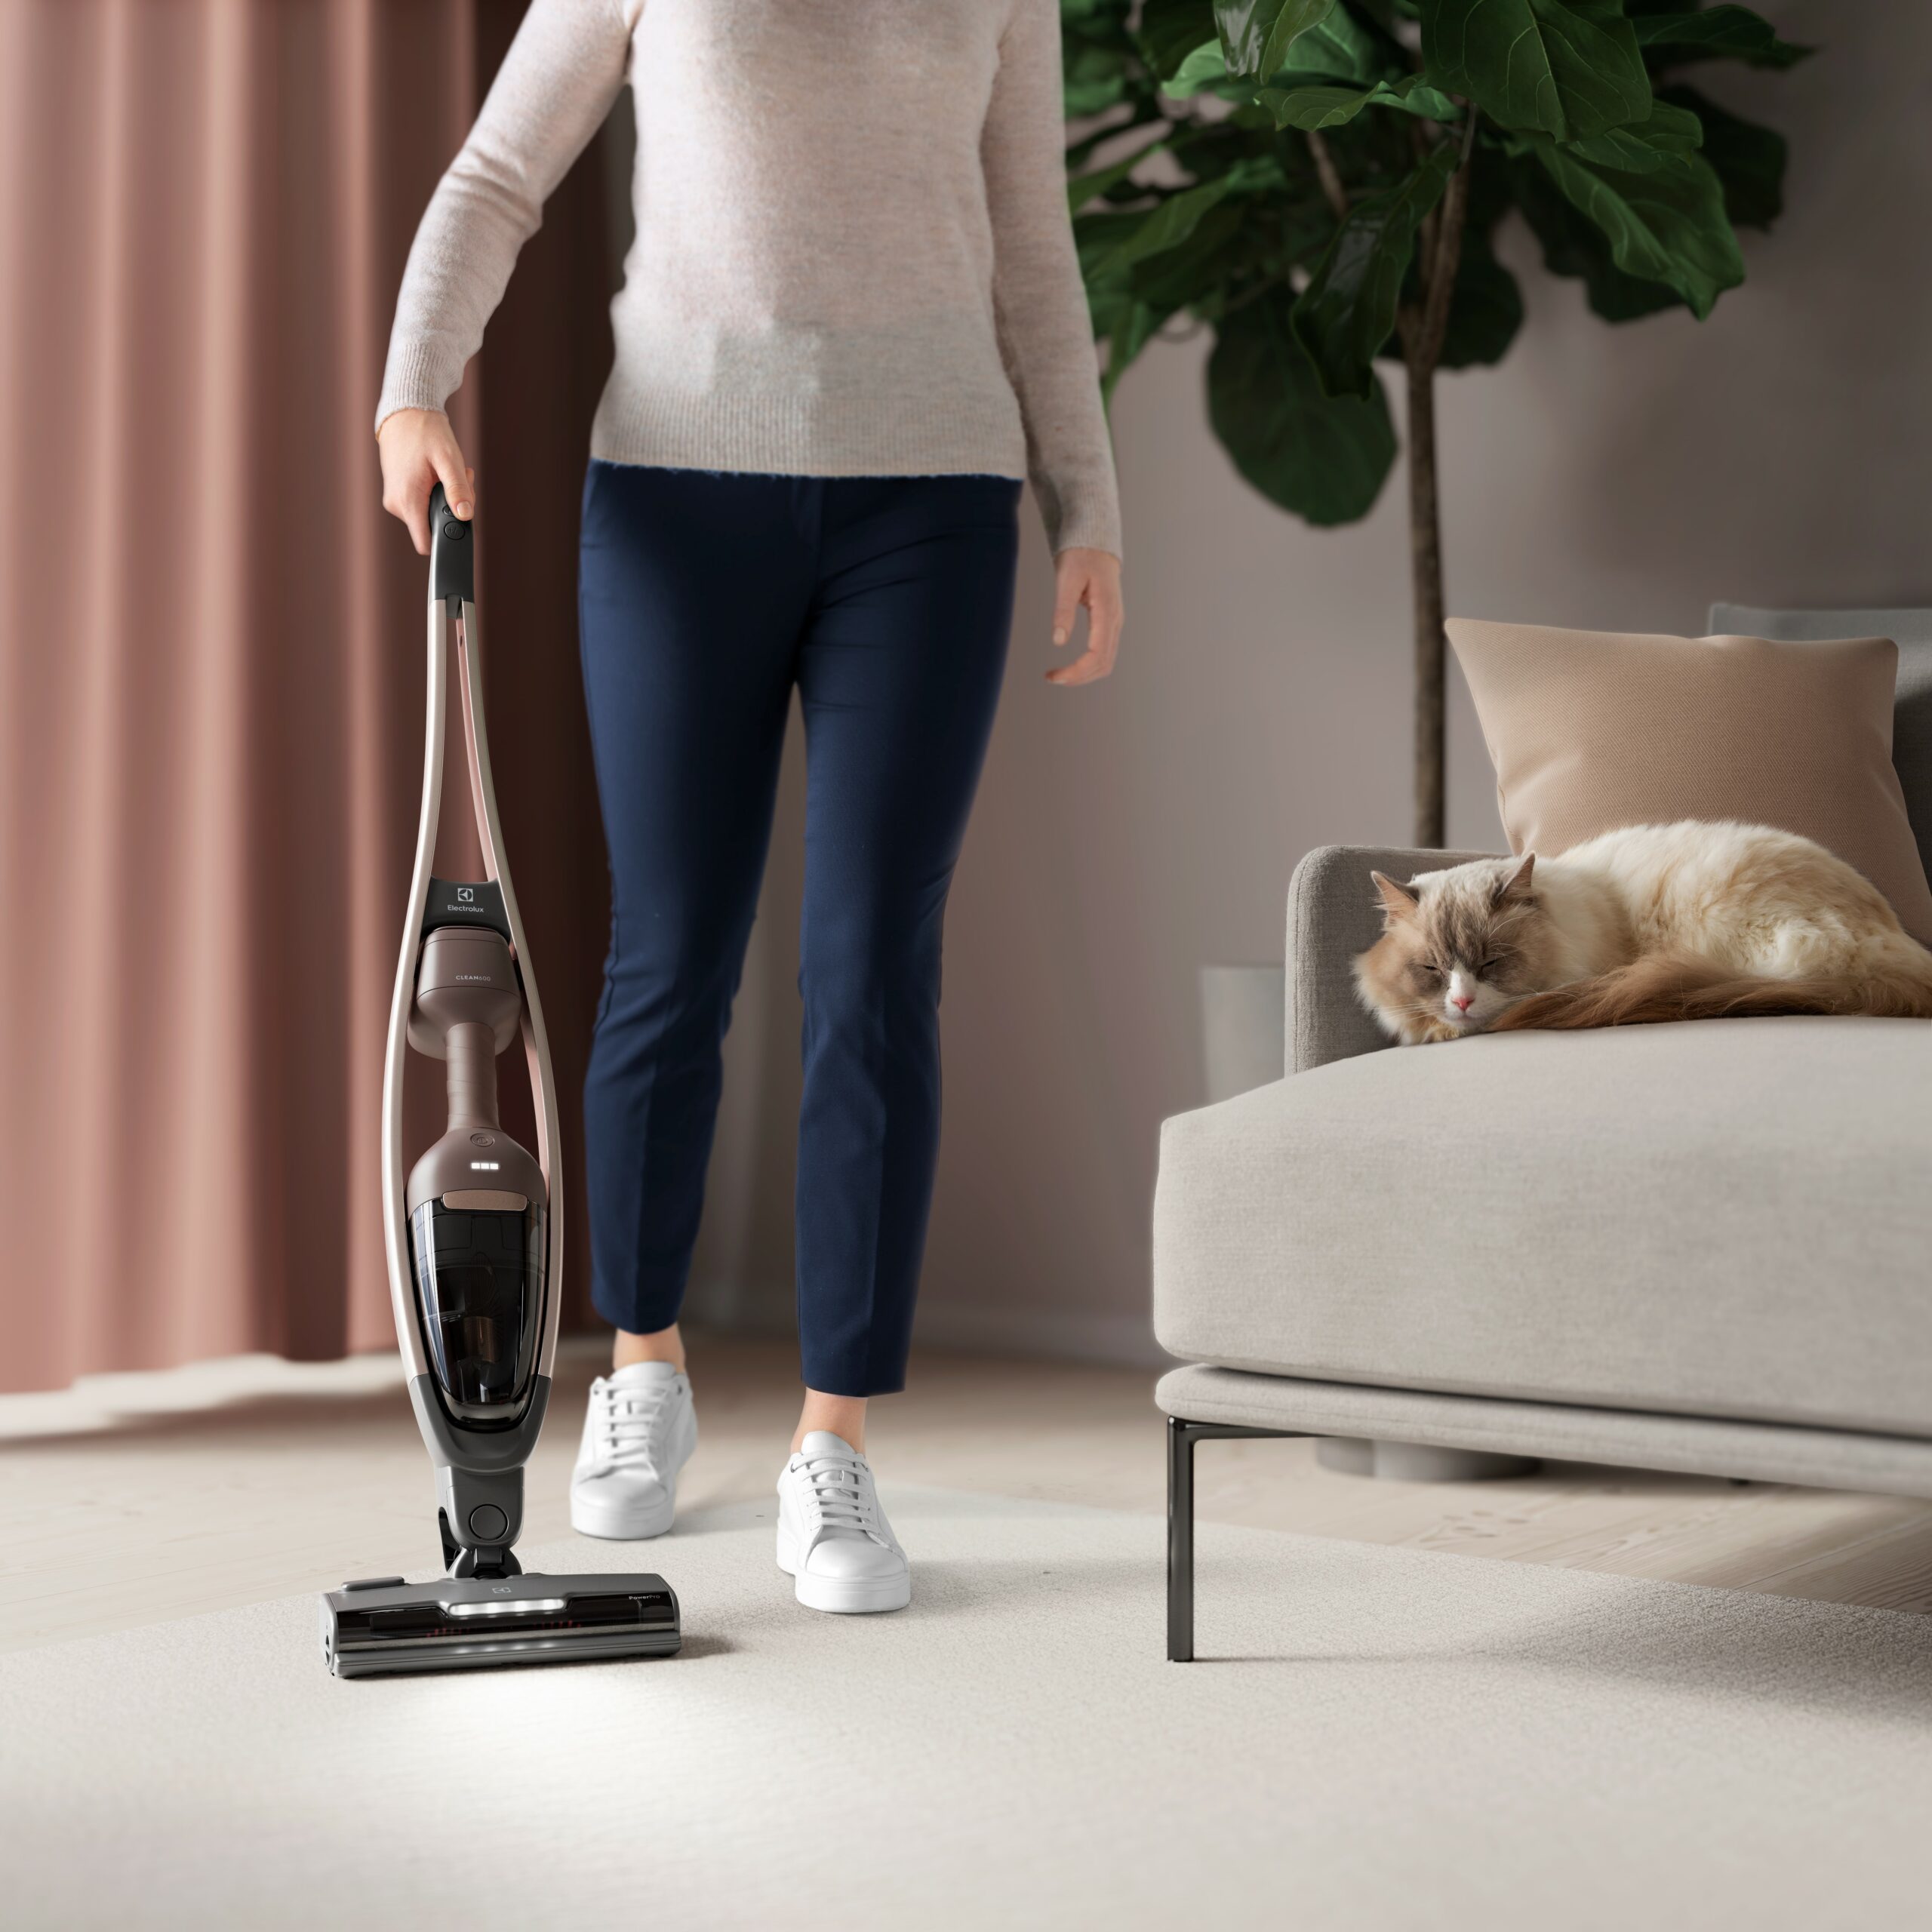 Improving Vacuum Cleaners